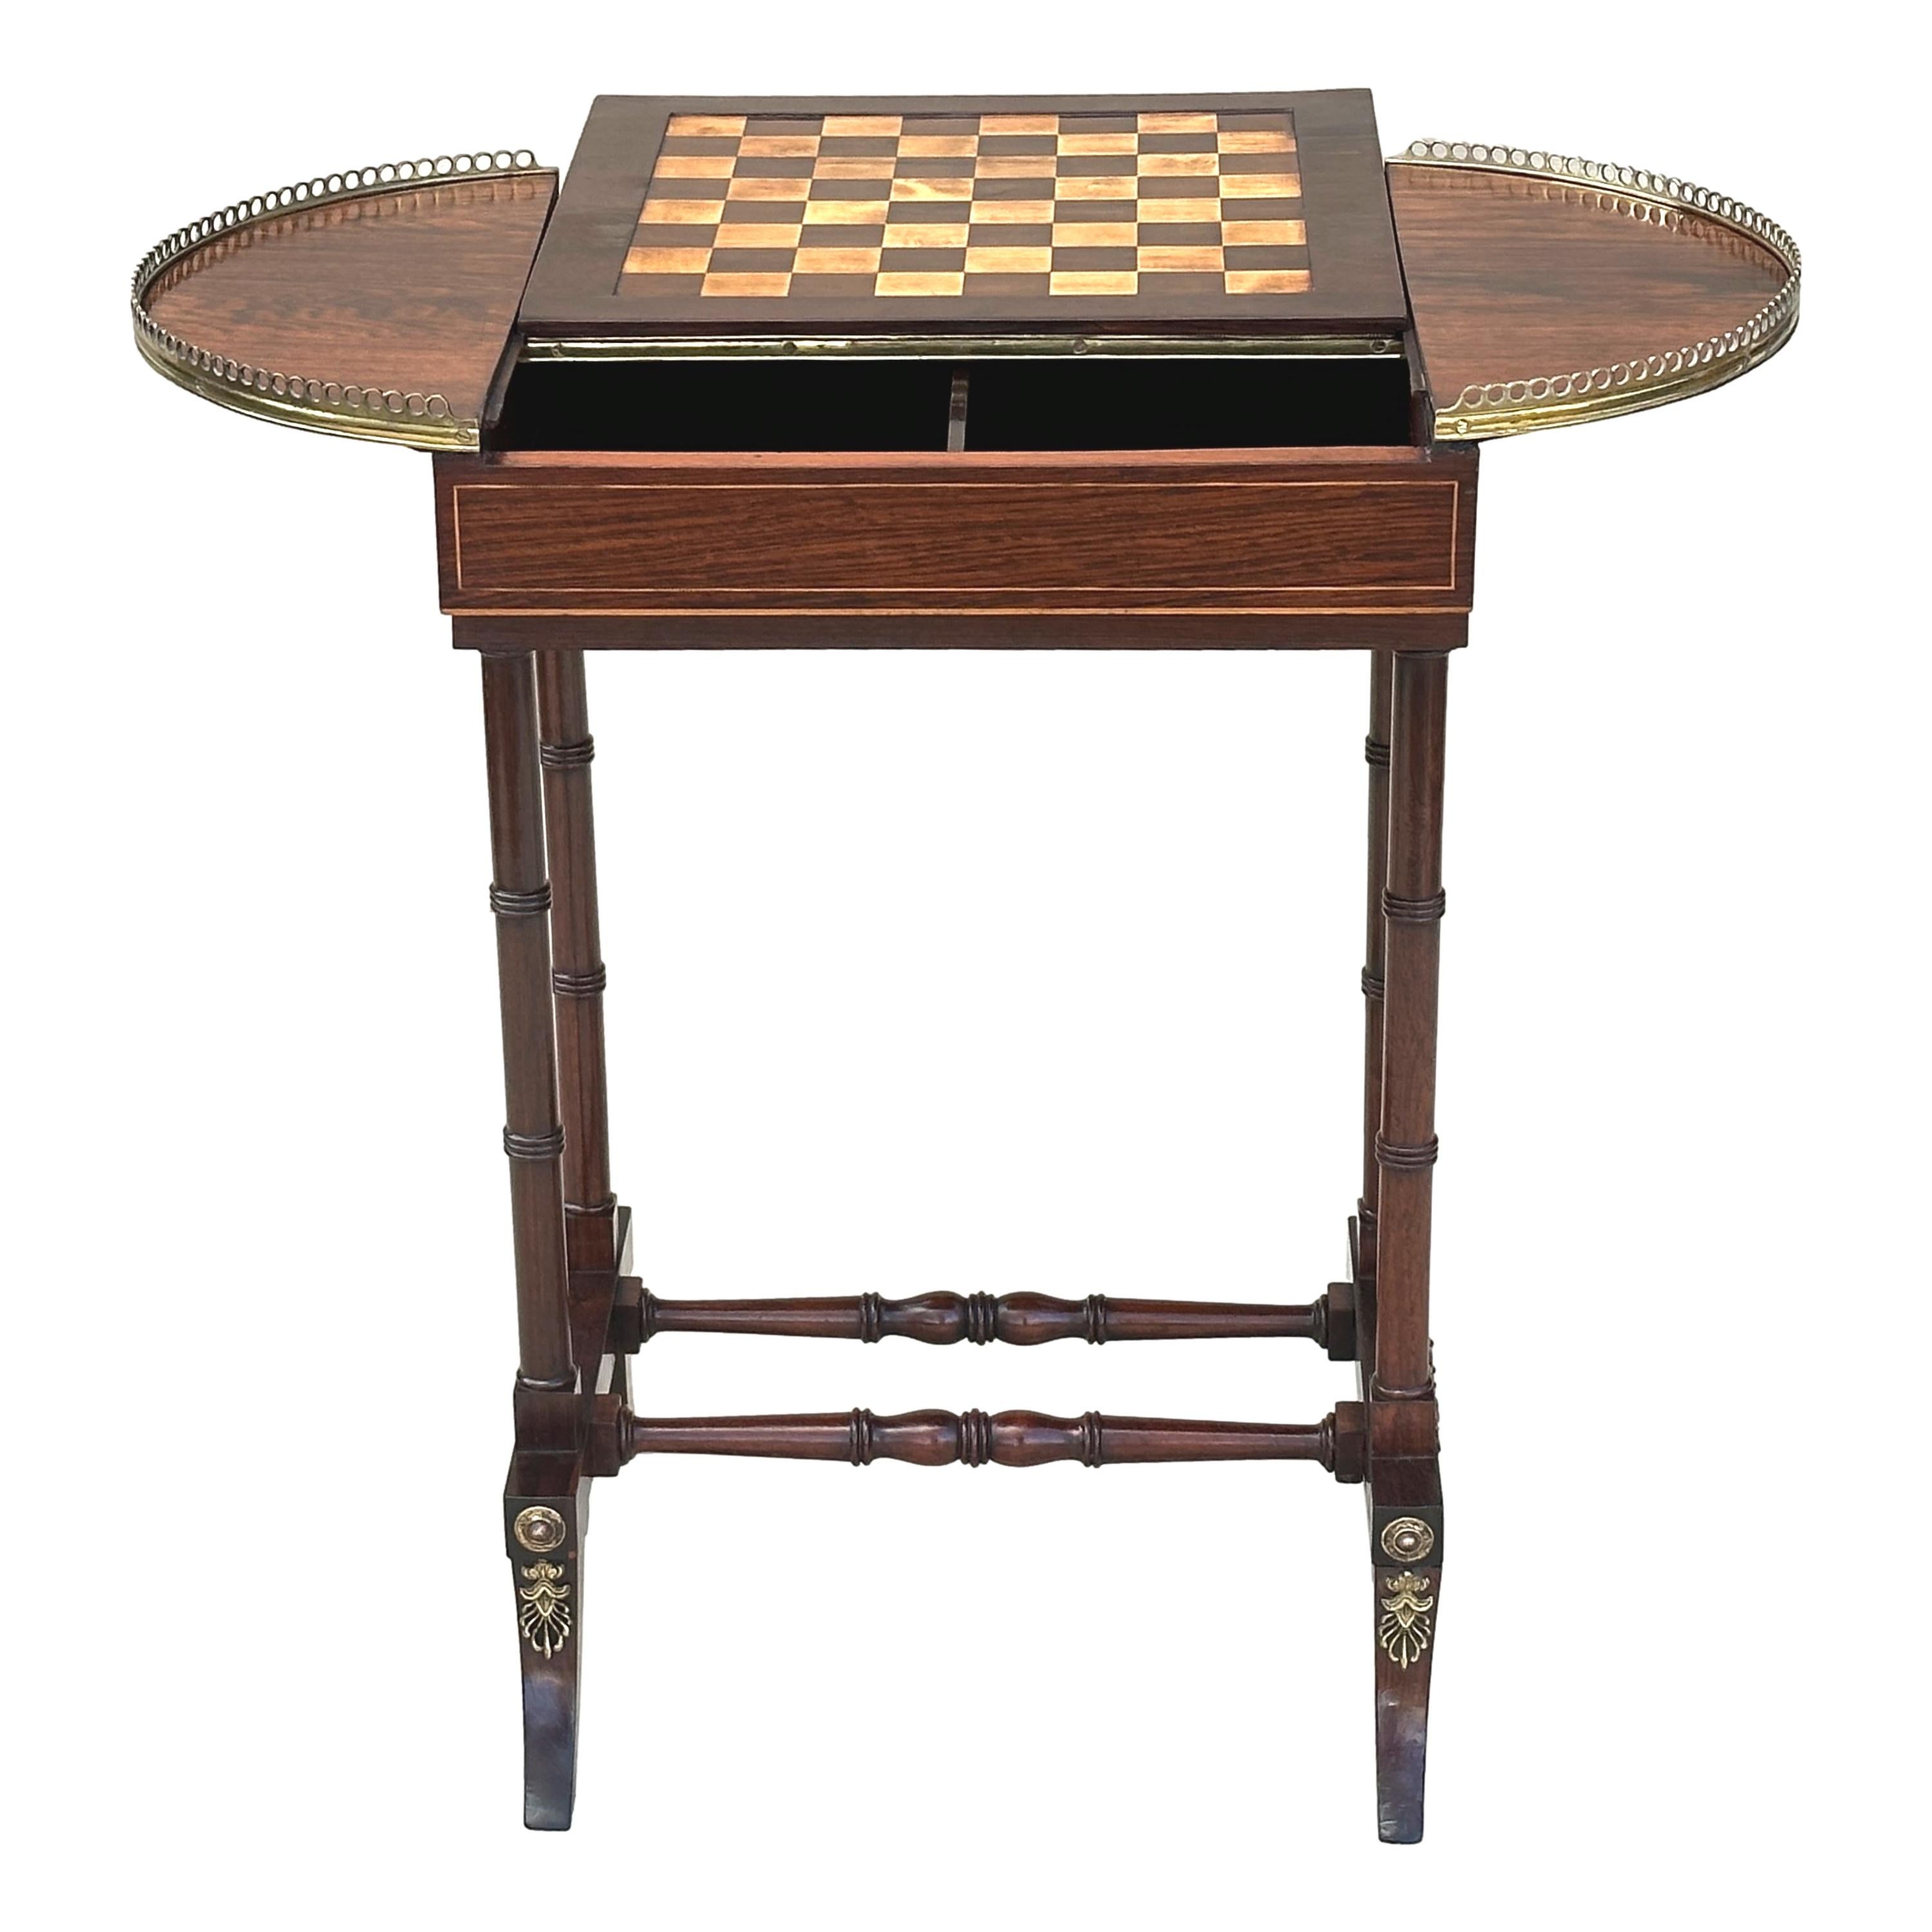 Eine hervorragende Qualität Regency Periode Palisander und Messing Spiele Tisch, mit Schachbrett eingelegt, Reversible, abnehmbare Top umschließt Backgammon-Board, flankiert von gebogenen Enden mit Original-Messing-Galerie, hob auf eleganten